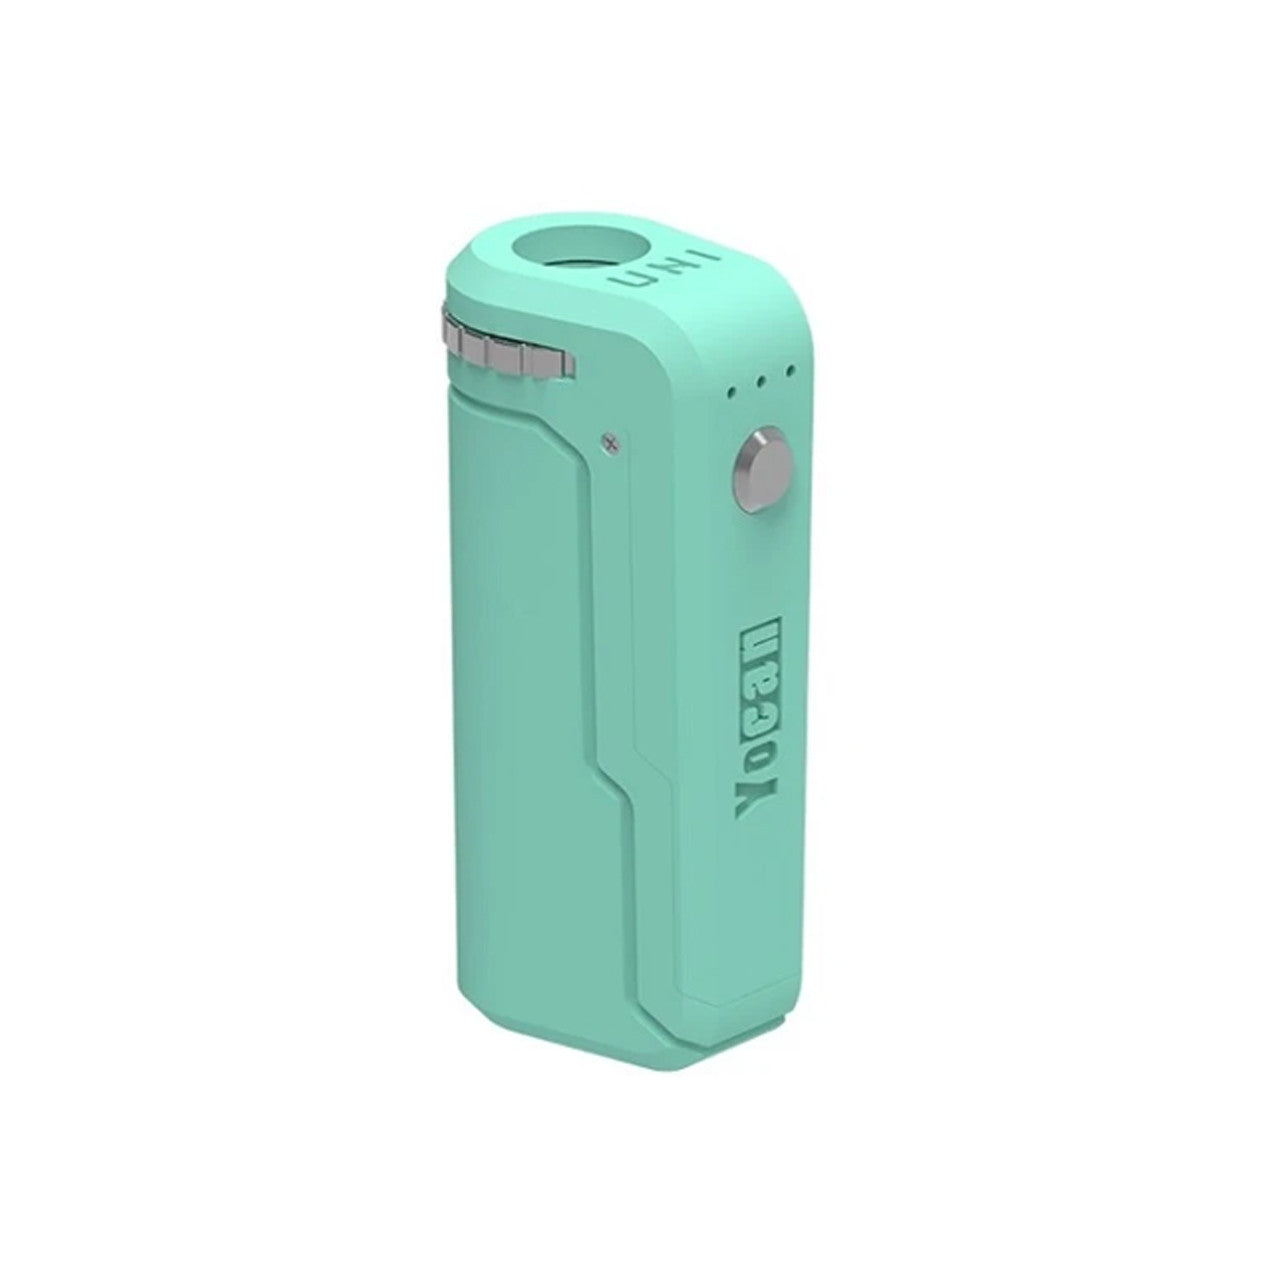 Yocan UNI 650mAh Universal Carto Battery Mod - Mint Green